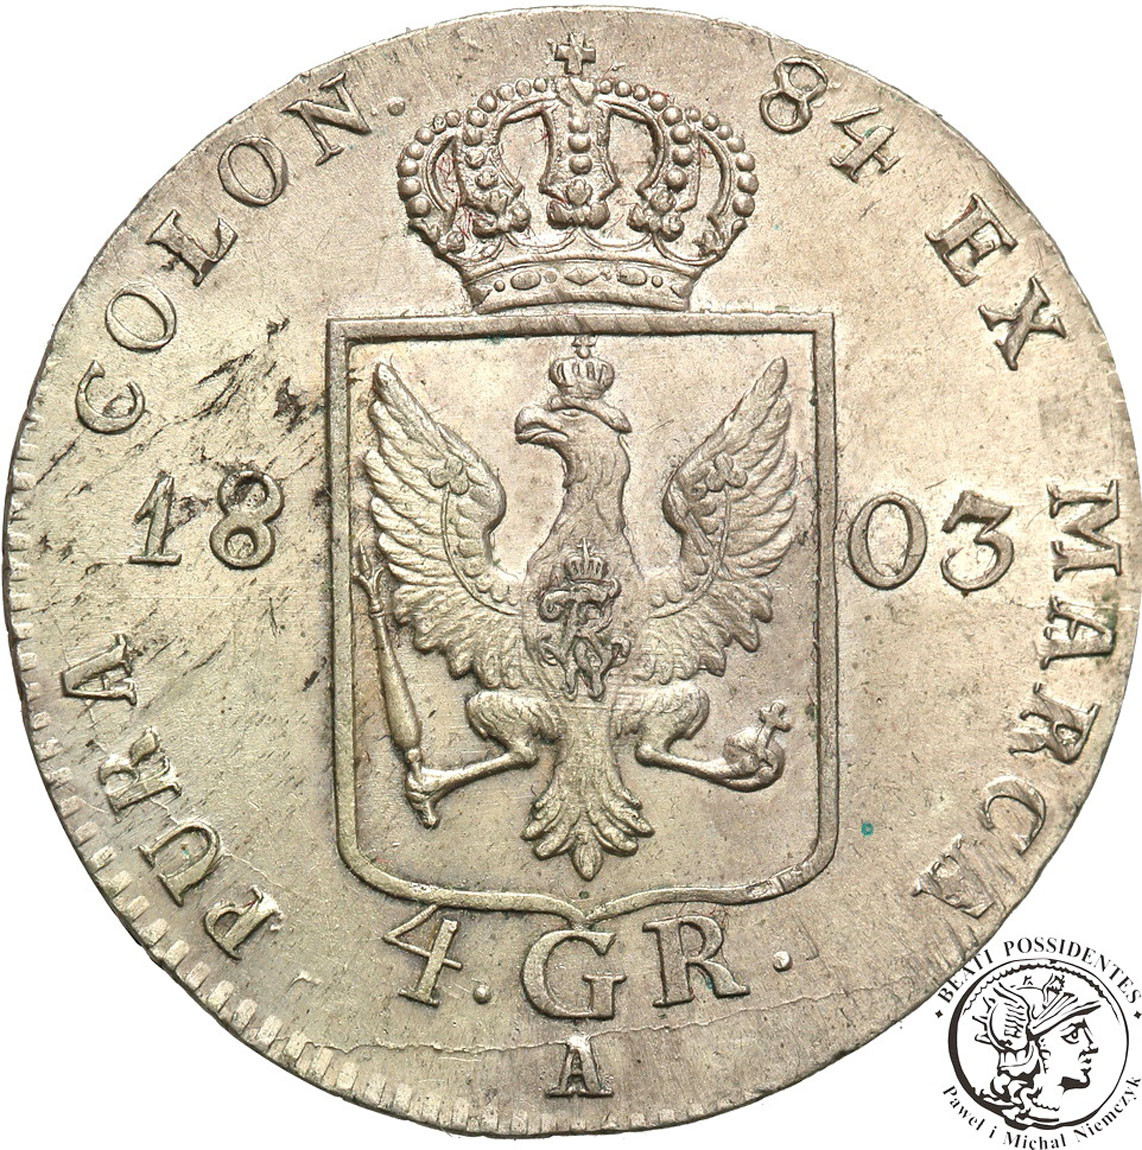 Niemcy, Prusy. Fryderyk Wilhelm III. 4 Grosze 1803 A, Berlin